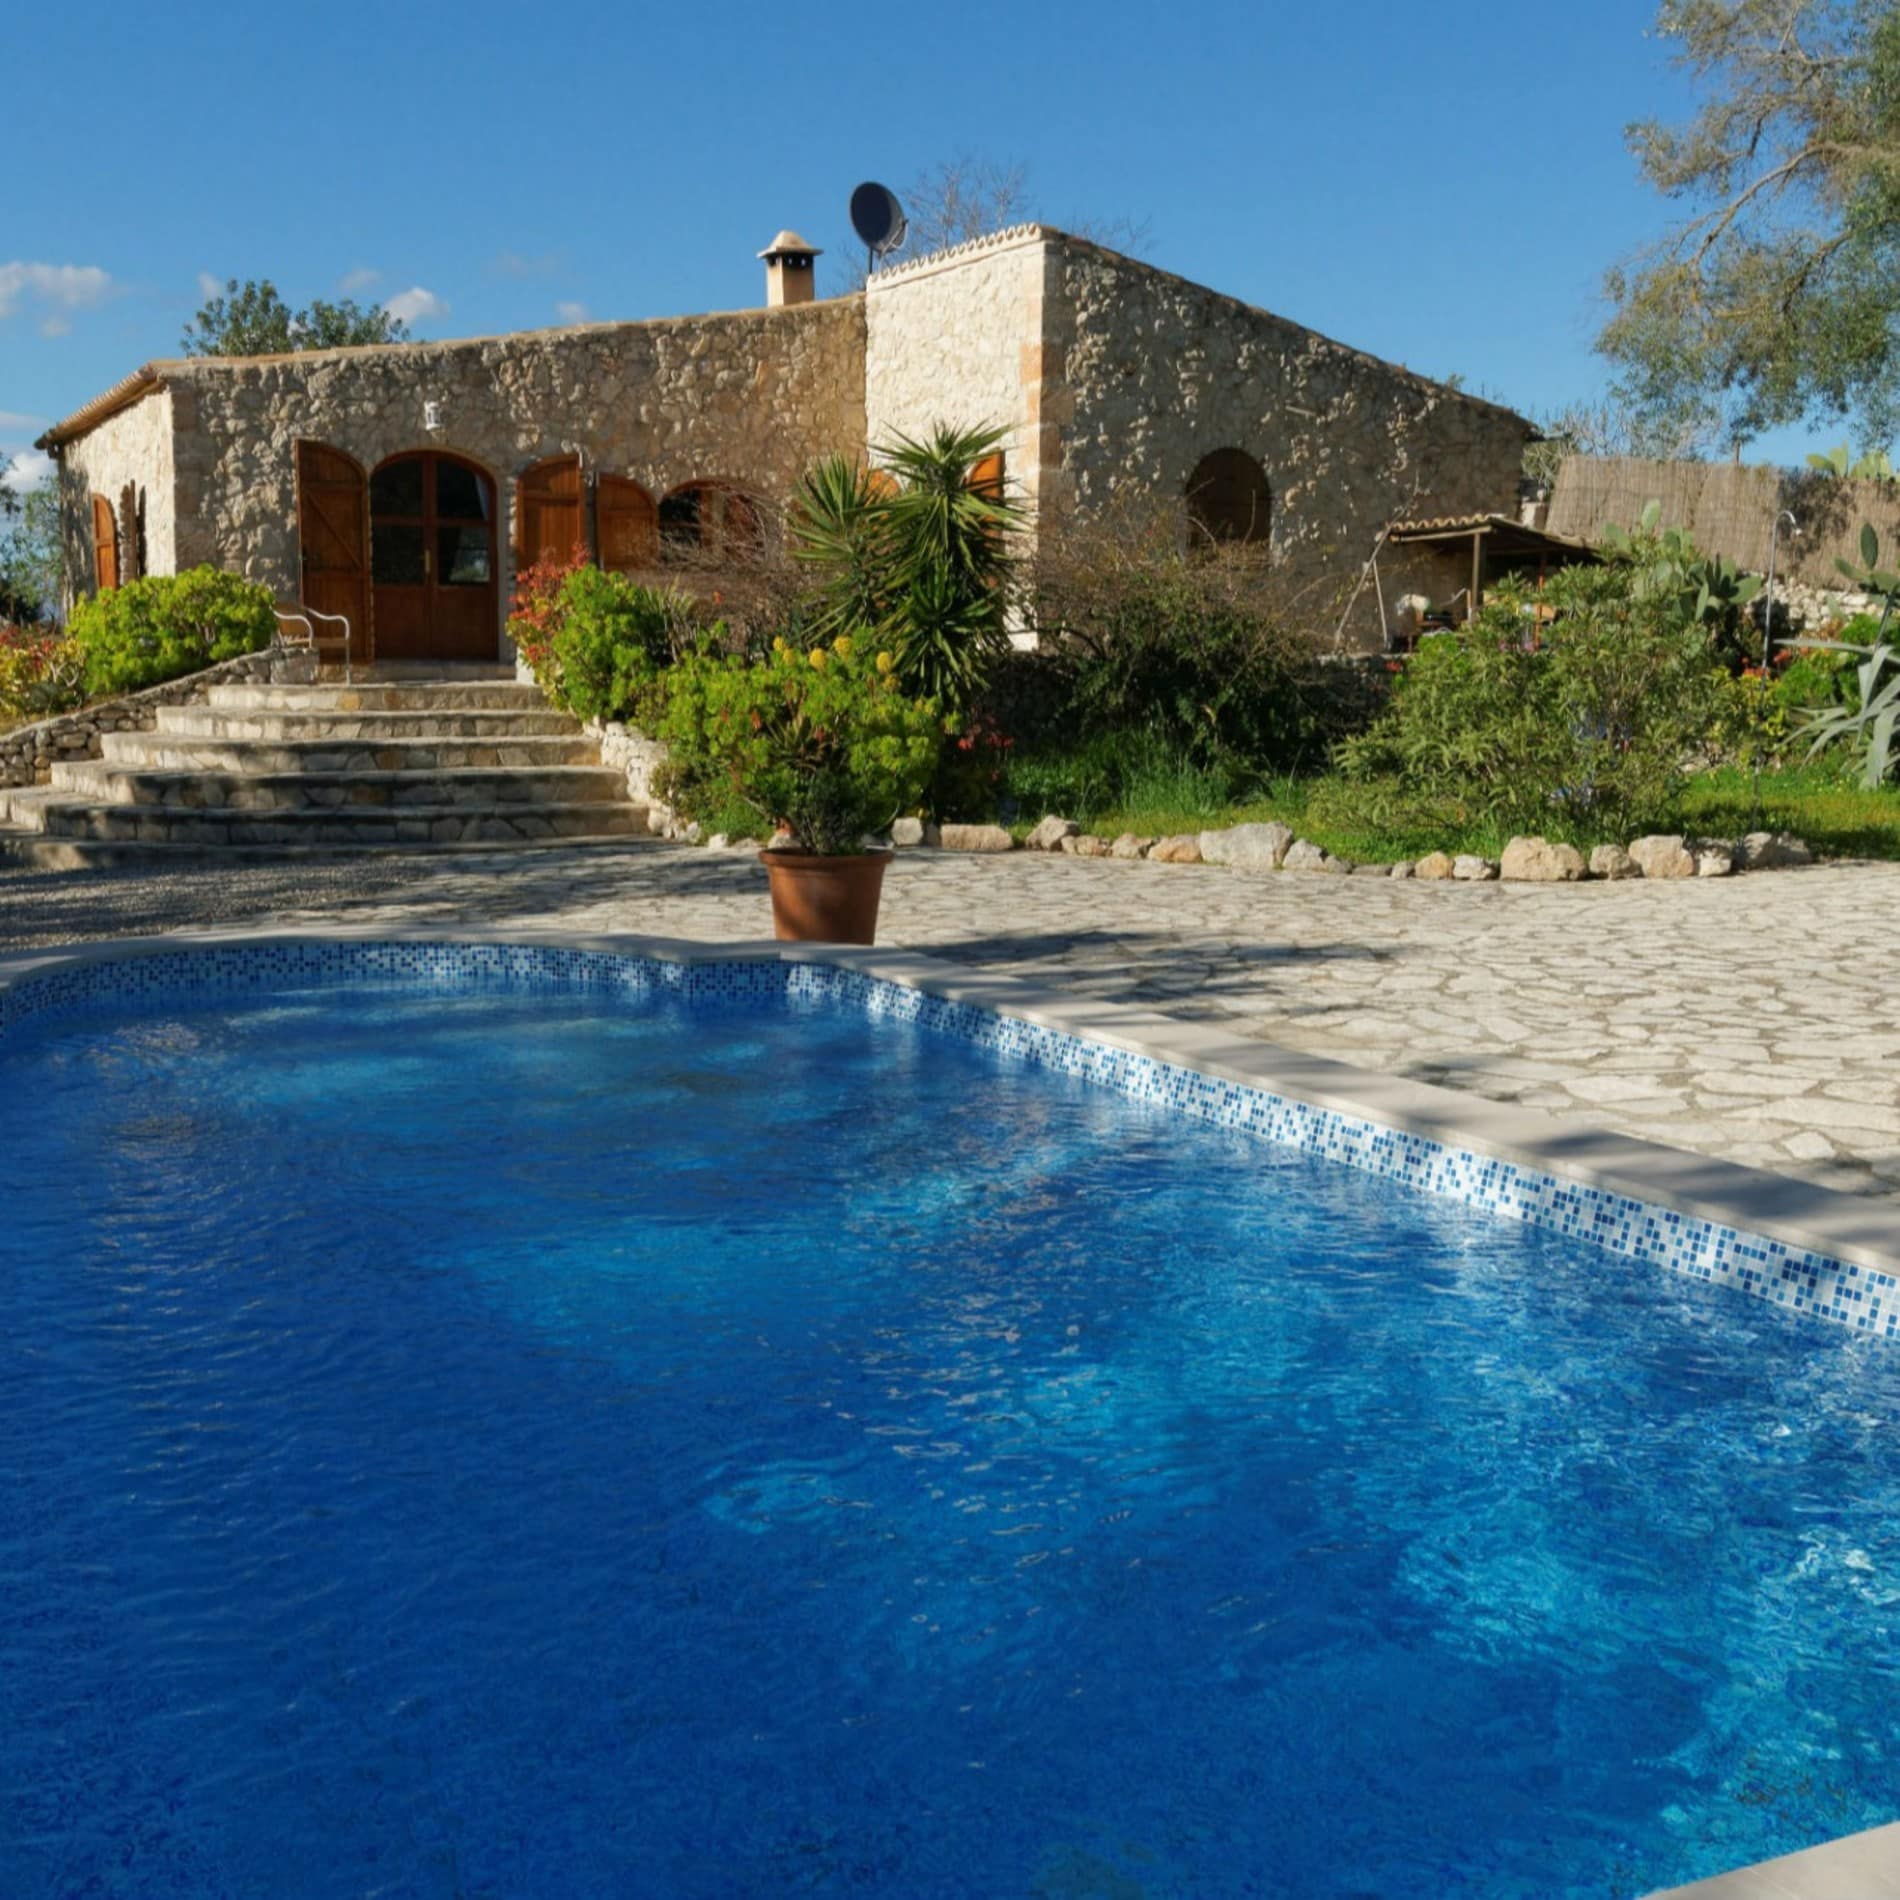 Blick auf einen Bungalow auf Mallorca mit Pool, Terrasse und Garten